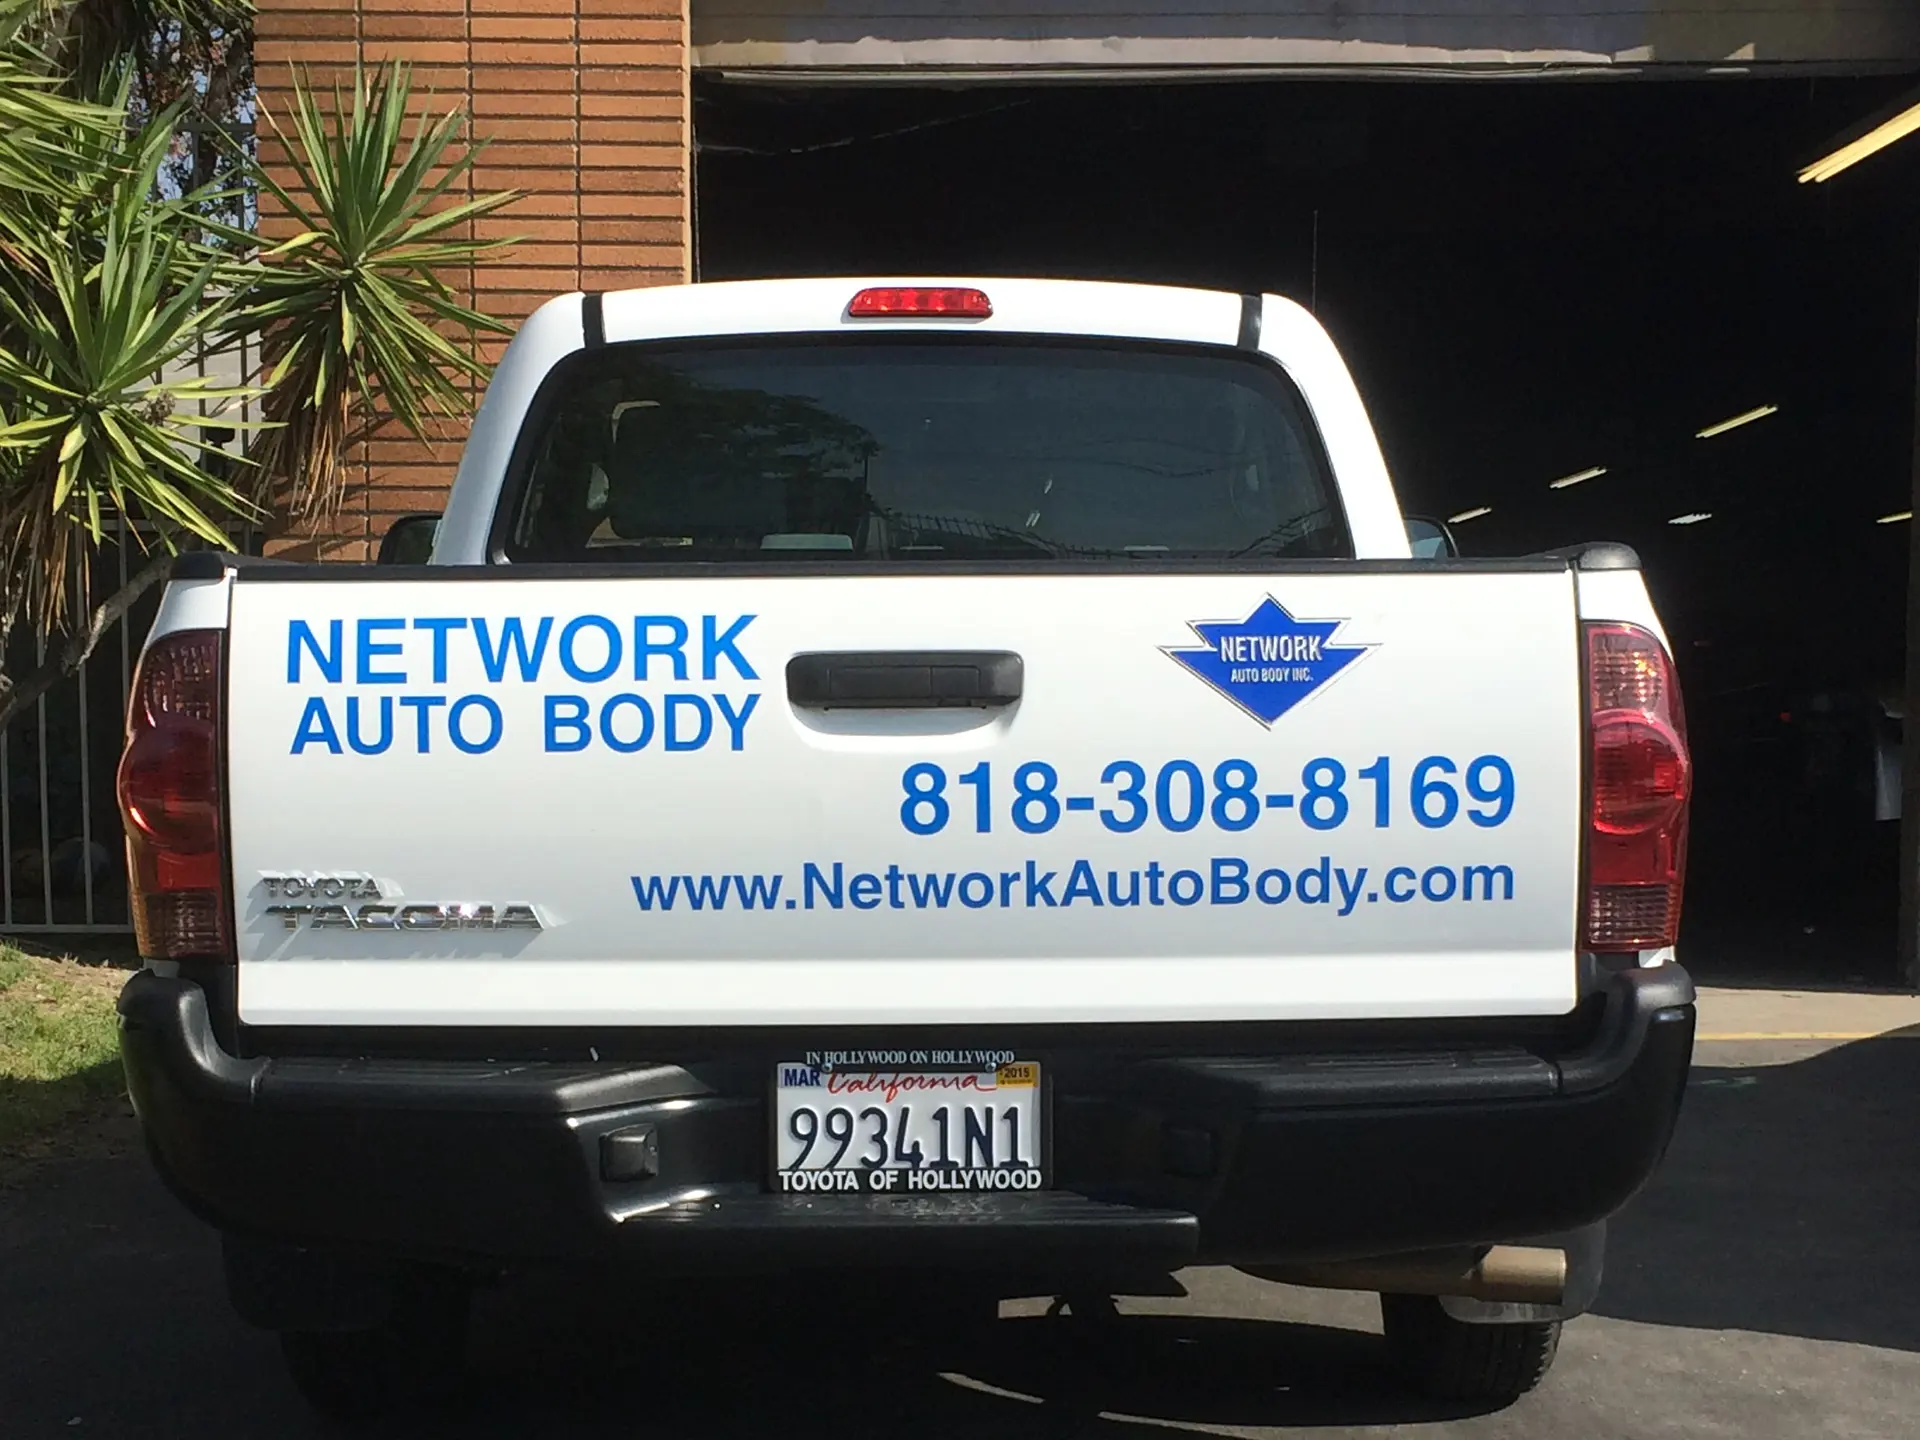 Network Auto Body Truck Graphic